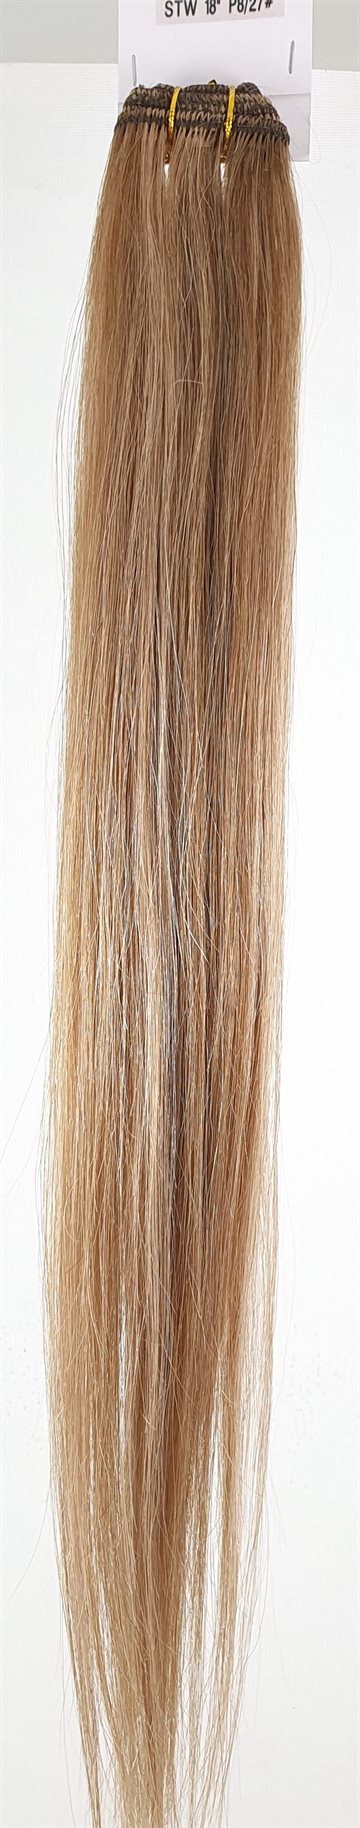 Human Hair - Silky straight weft 18" colour P8/27#